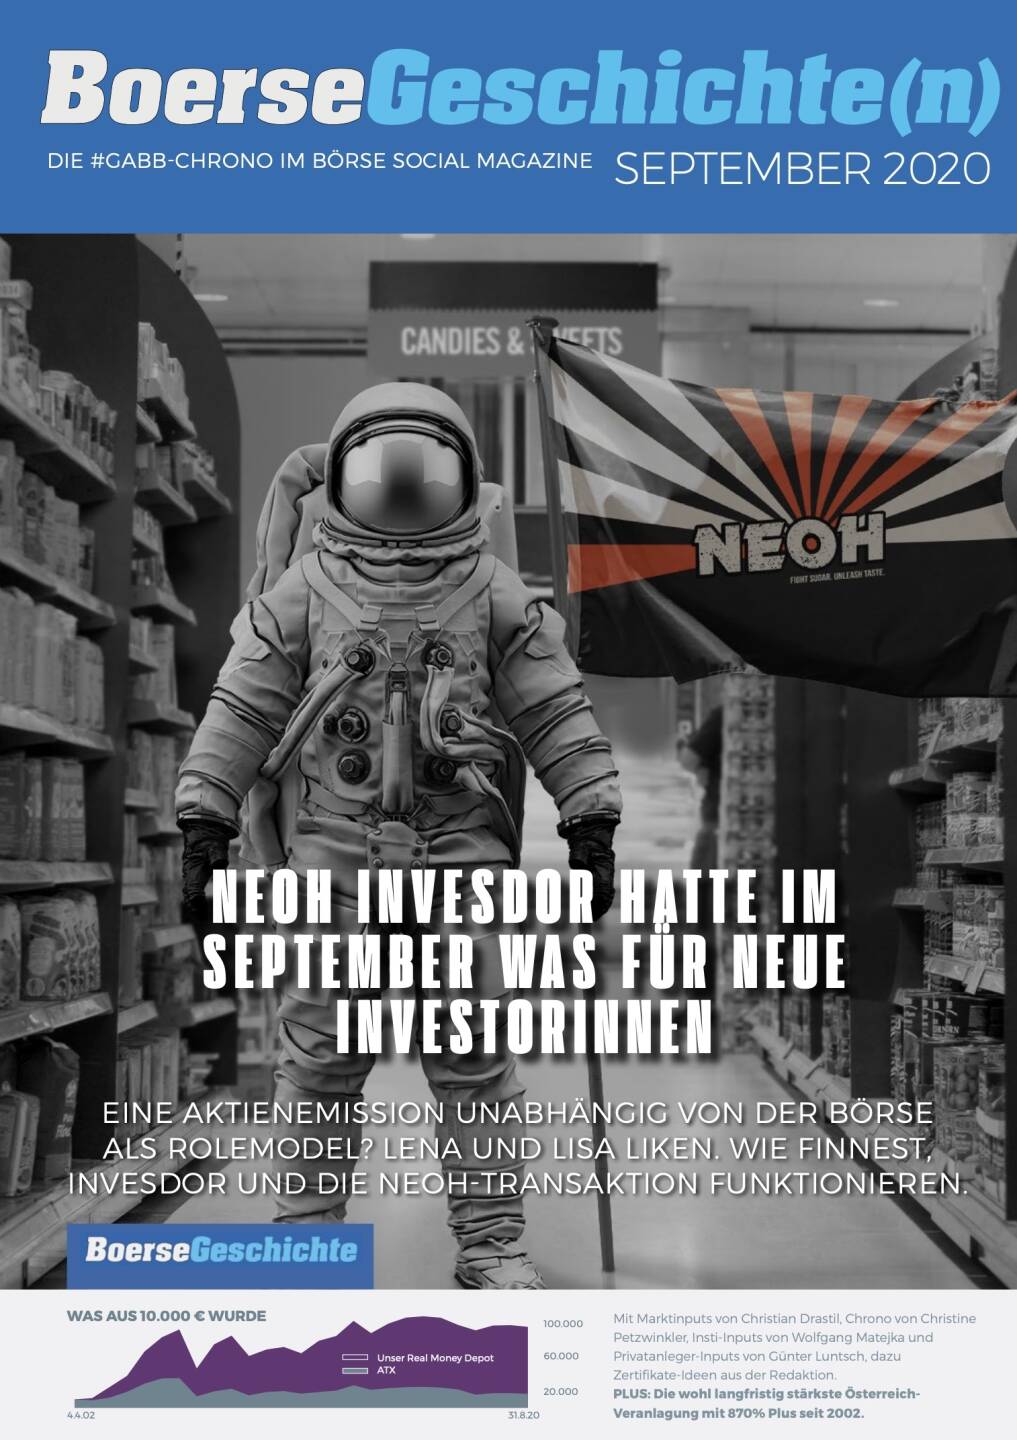 Börsegeschichte(n) September 2020 - NEOH Invesdor hatte im September was für neue Investorinnen - eine Aktienemission unabhängig von der Börse als Rolemodel? Wie Finnest, Invesdor und die NEOH-Transaktion funktionieren.